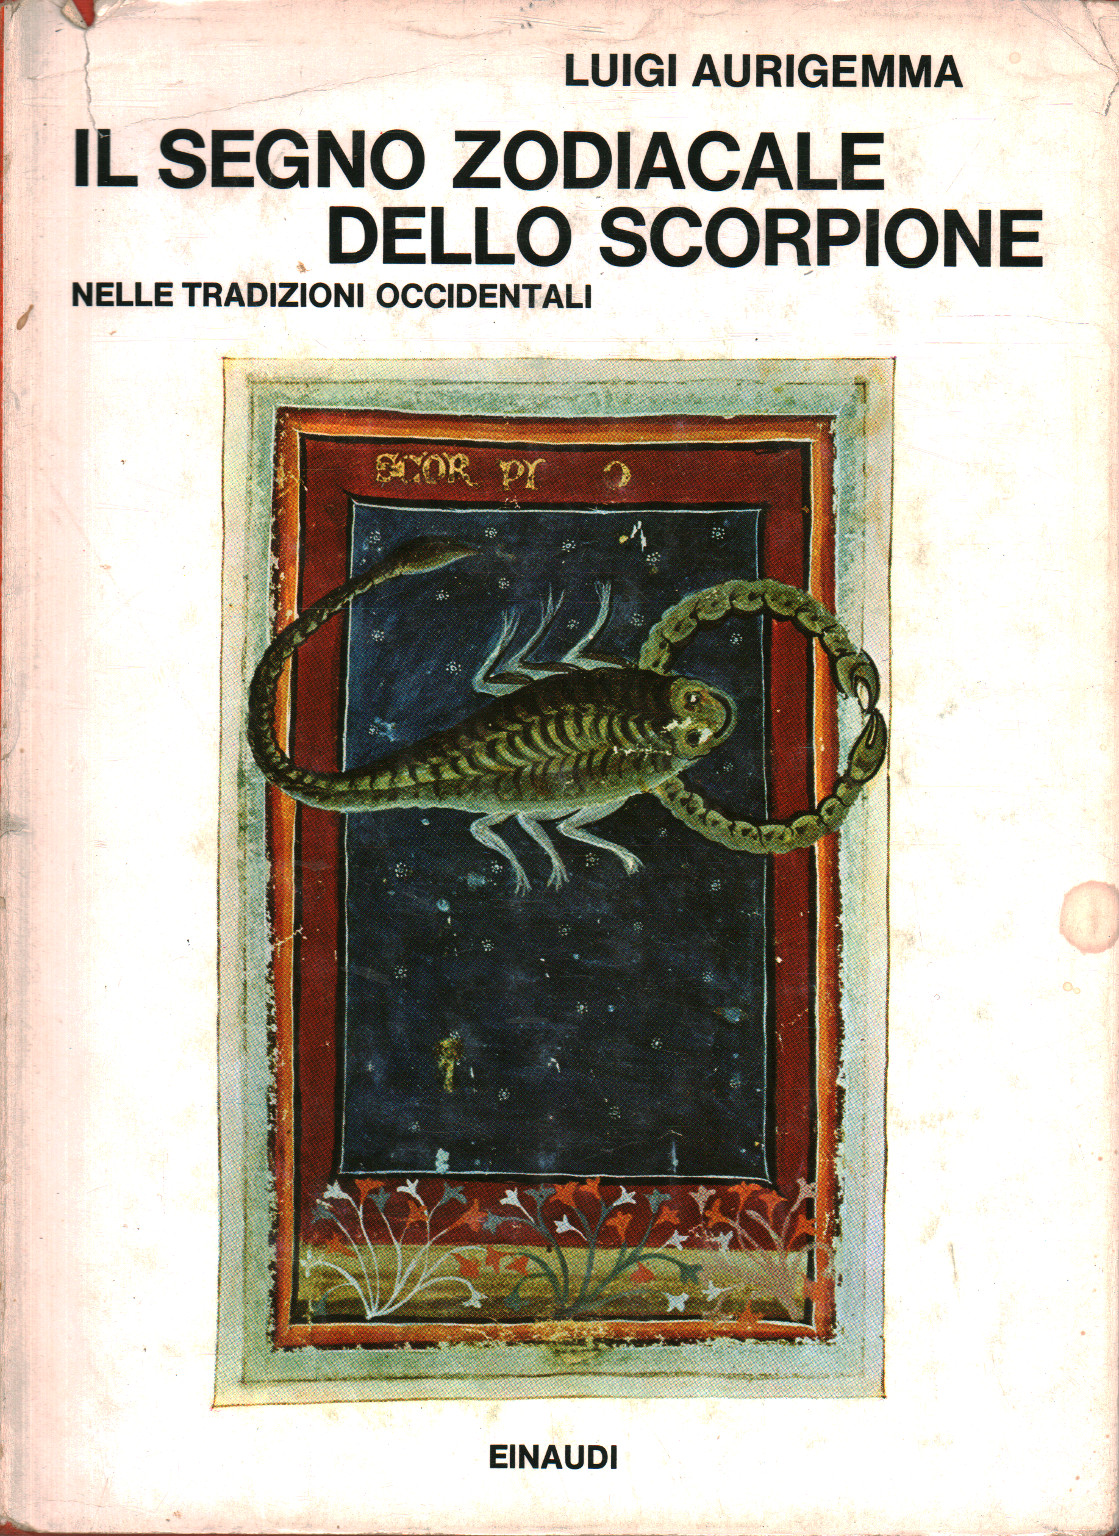 The zodiac sign of Scorpio